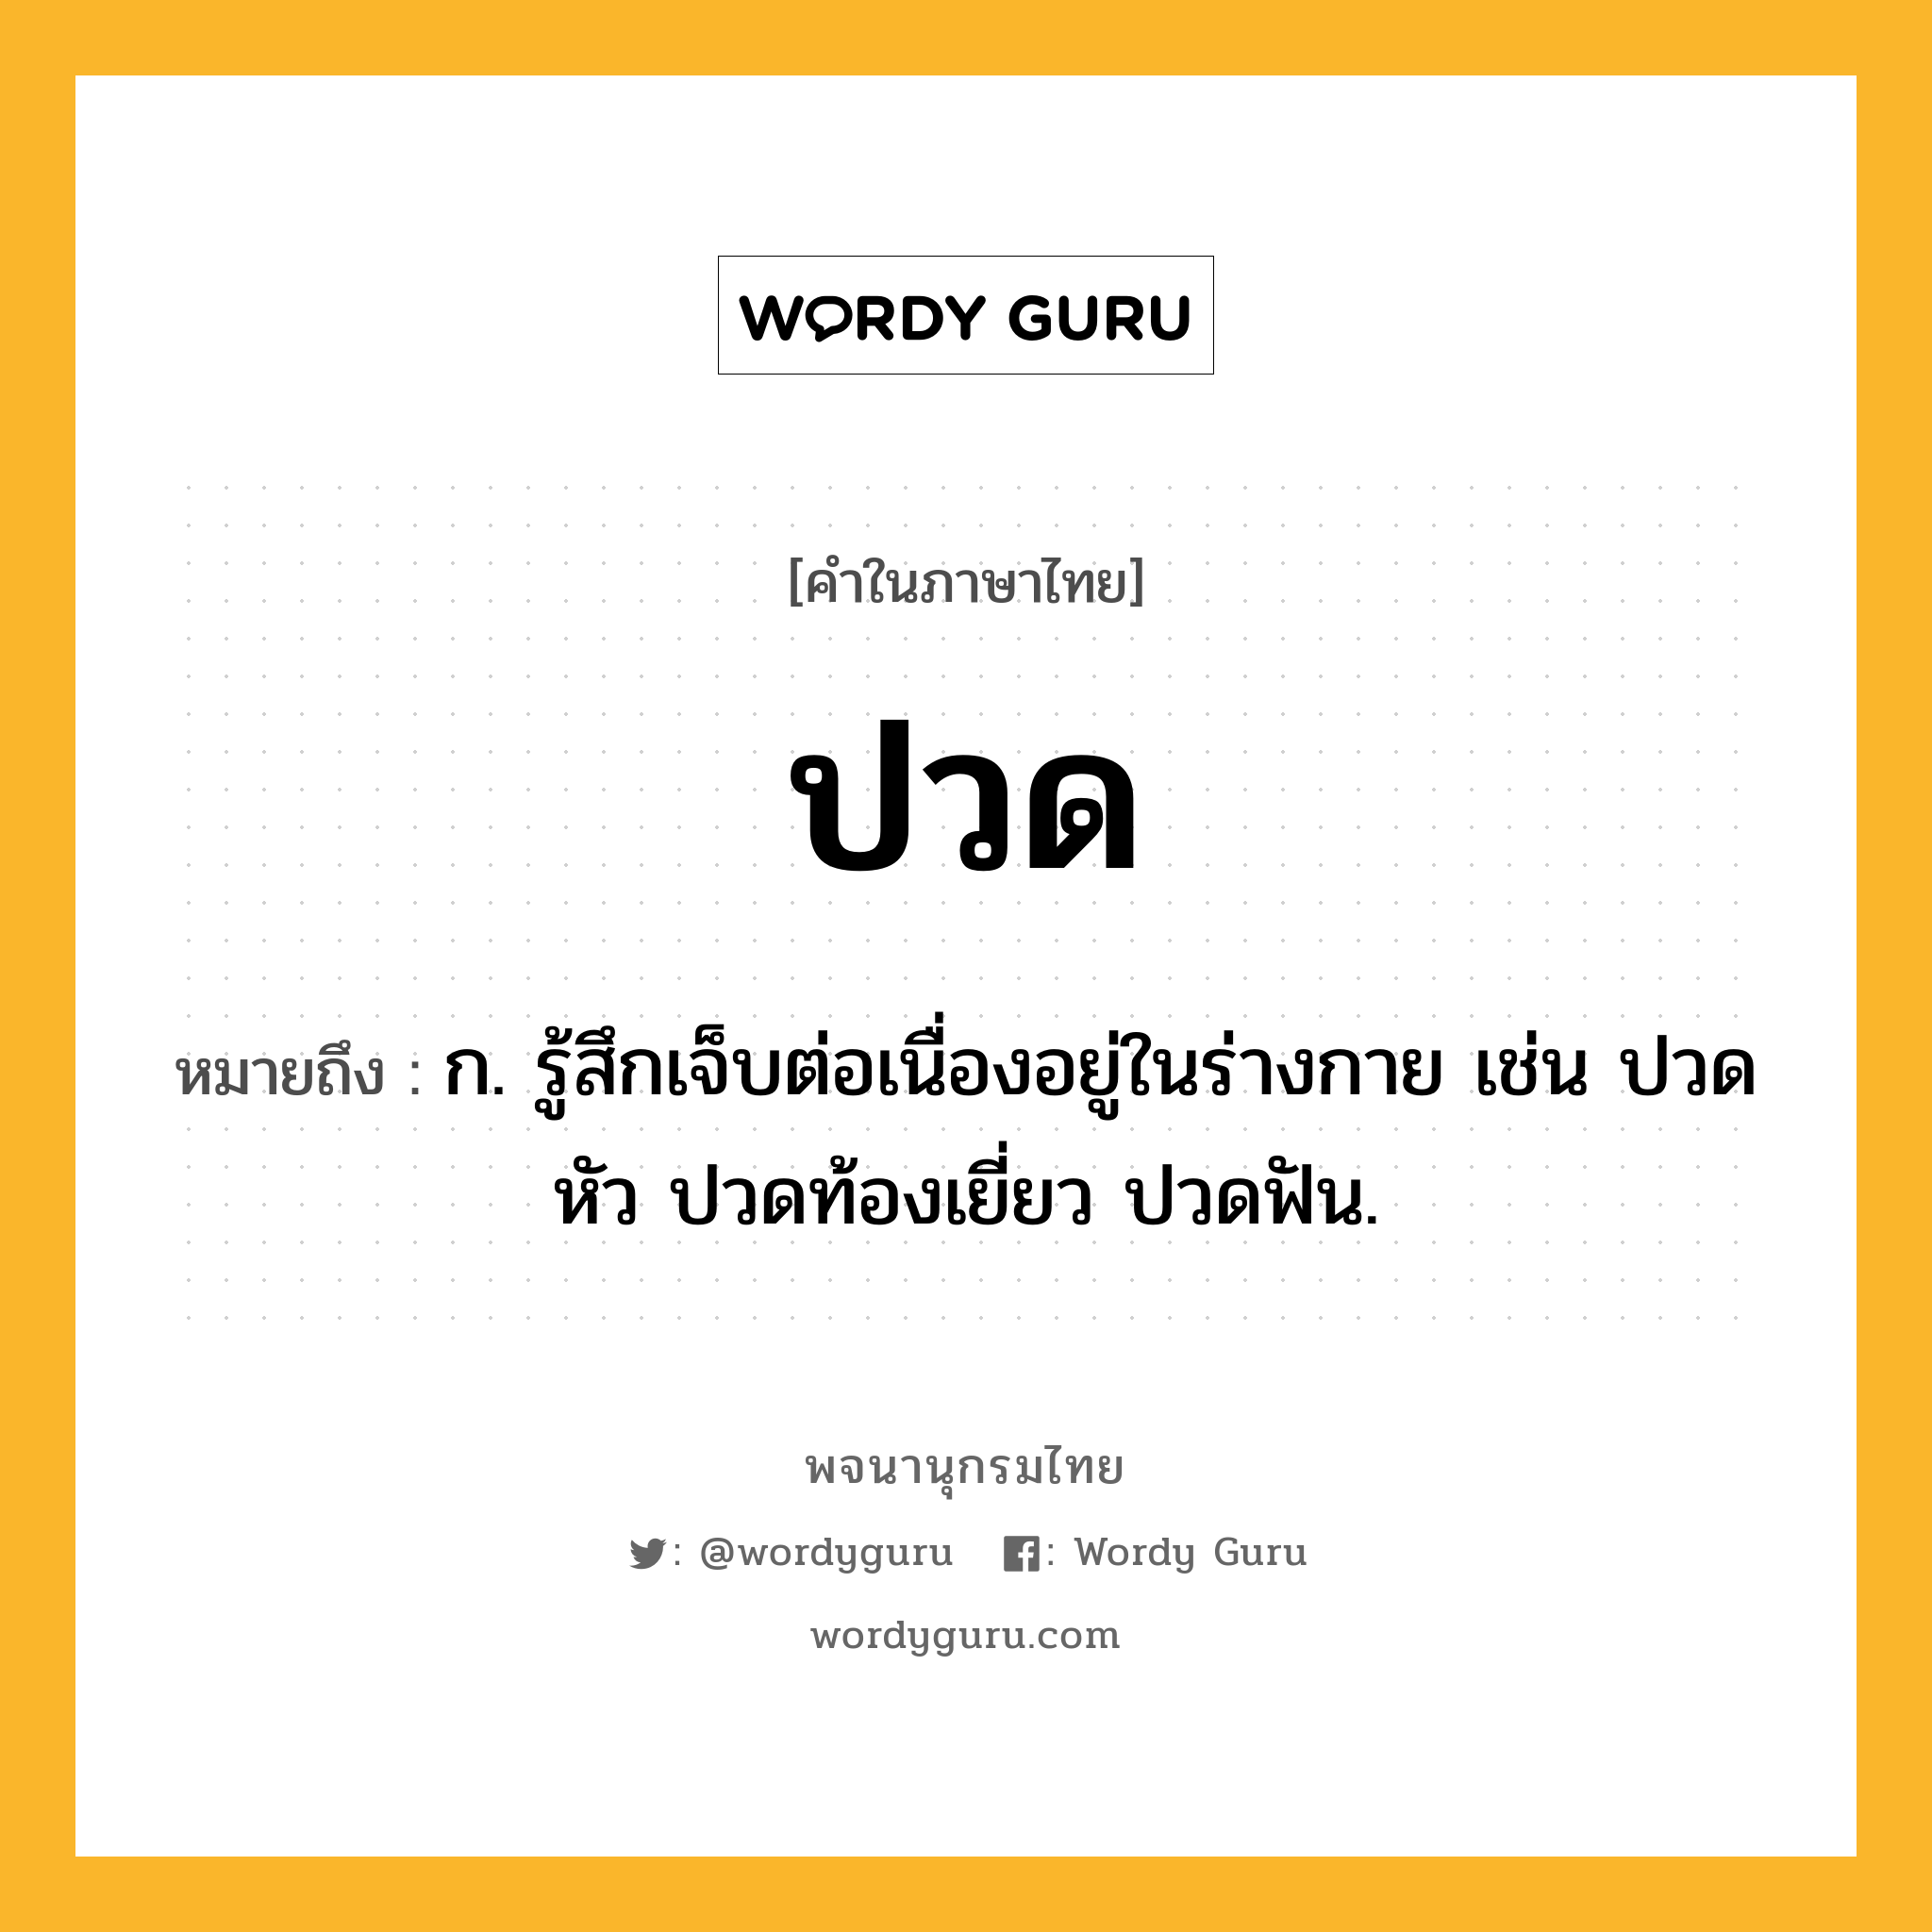 ปวด หมายถึงอะไร?, คำในภาษาไทย ปวด หมายถึง ก. รู้สึกเจ็บต่อเนื่องอยู่ในร่างกาย เช่น ปวดหัว ปวดท้องเยี่ยว ปวดฟัน.